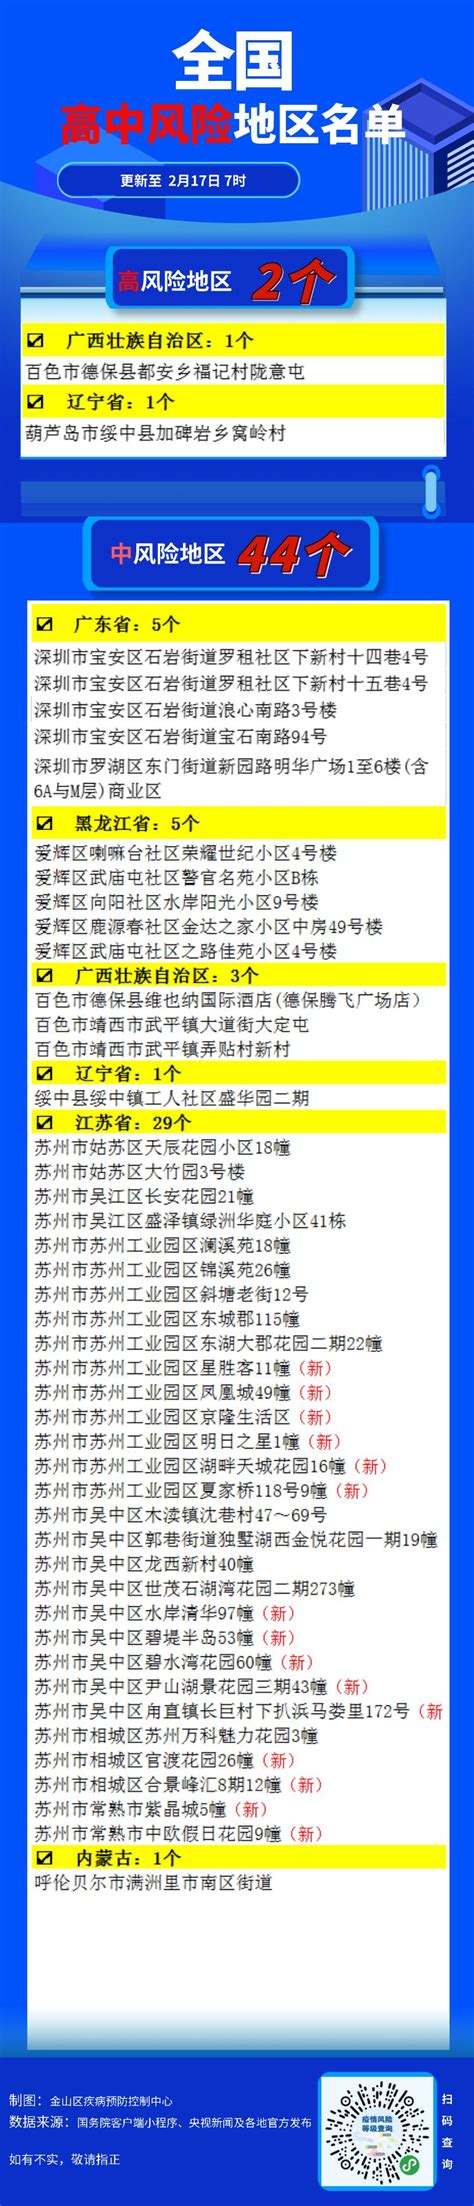 2022年5月23日北京中高风险地区最新名单- 北京本地宝